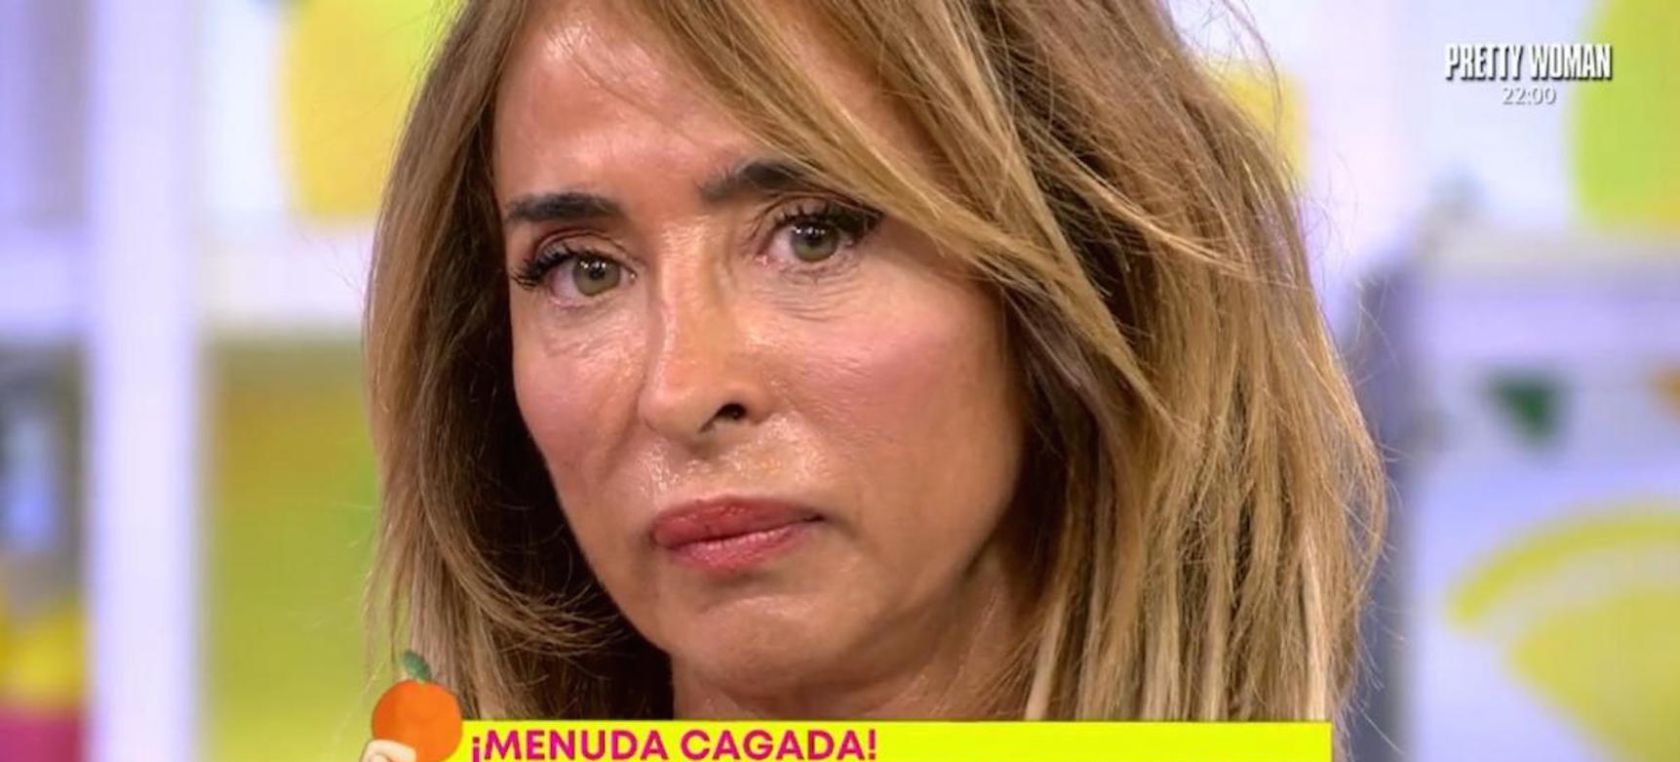 María Patiño pide perdón por las imágenes falsas de Isabel Pantoja que le colaron